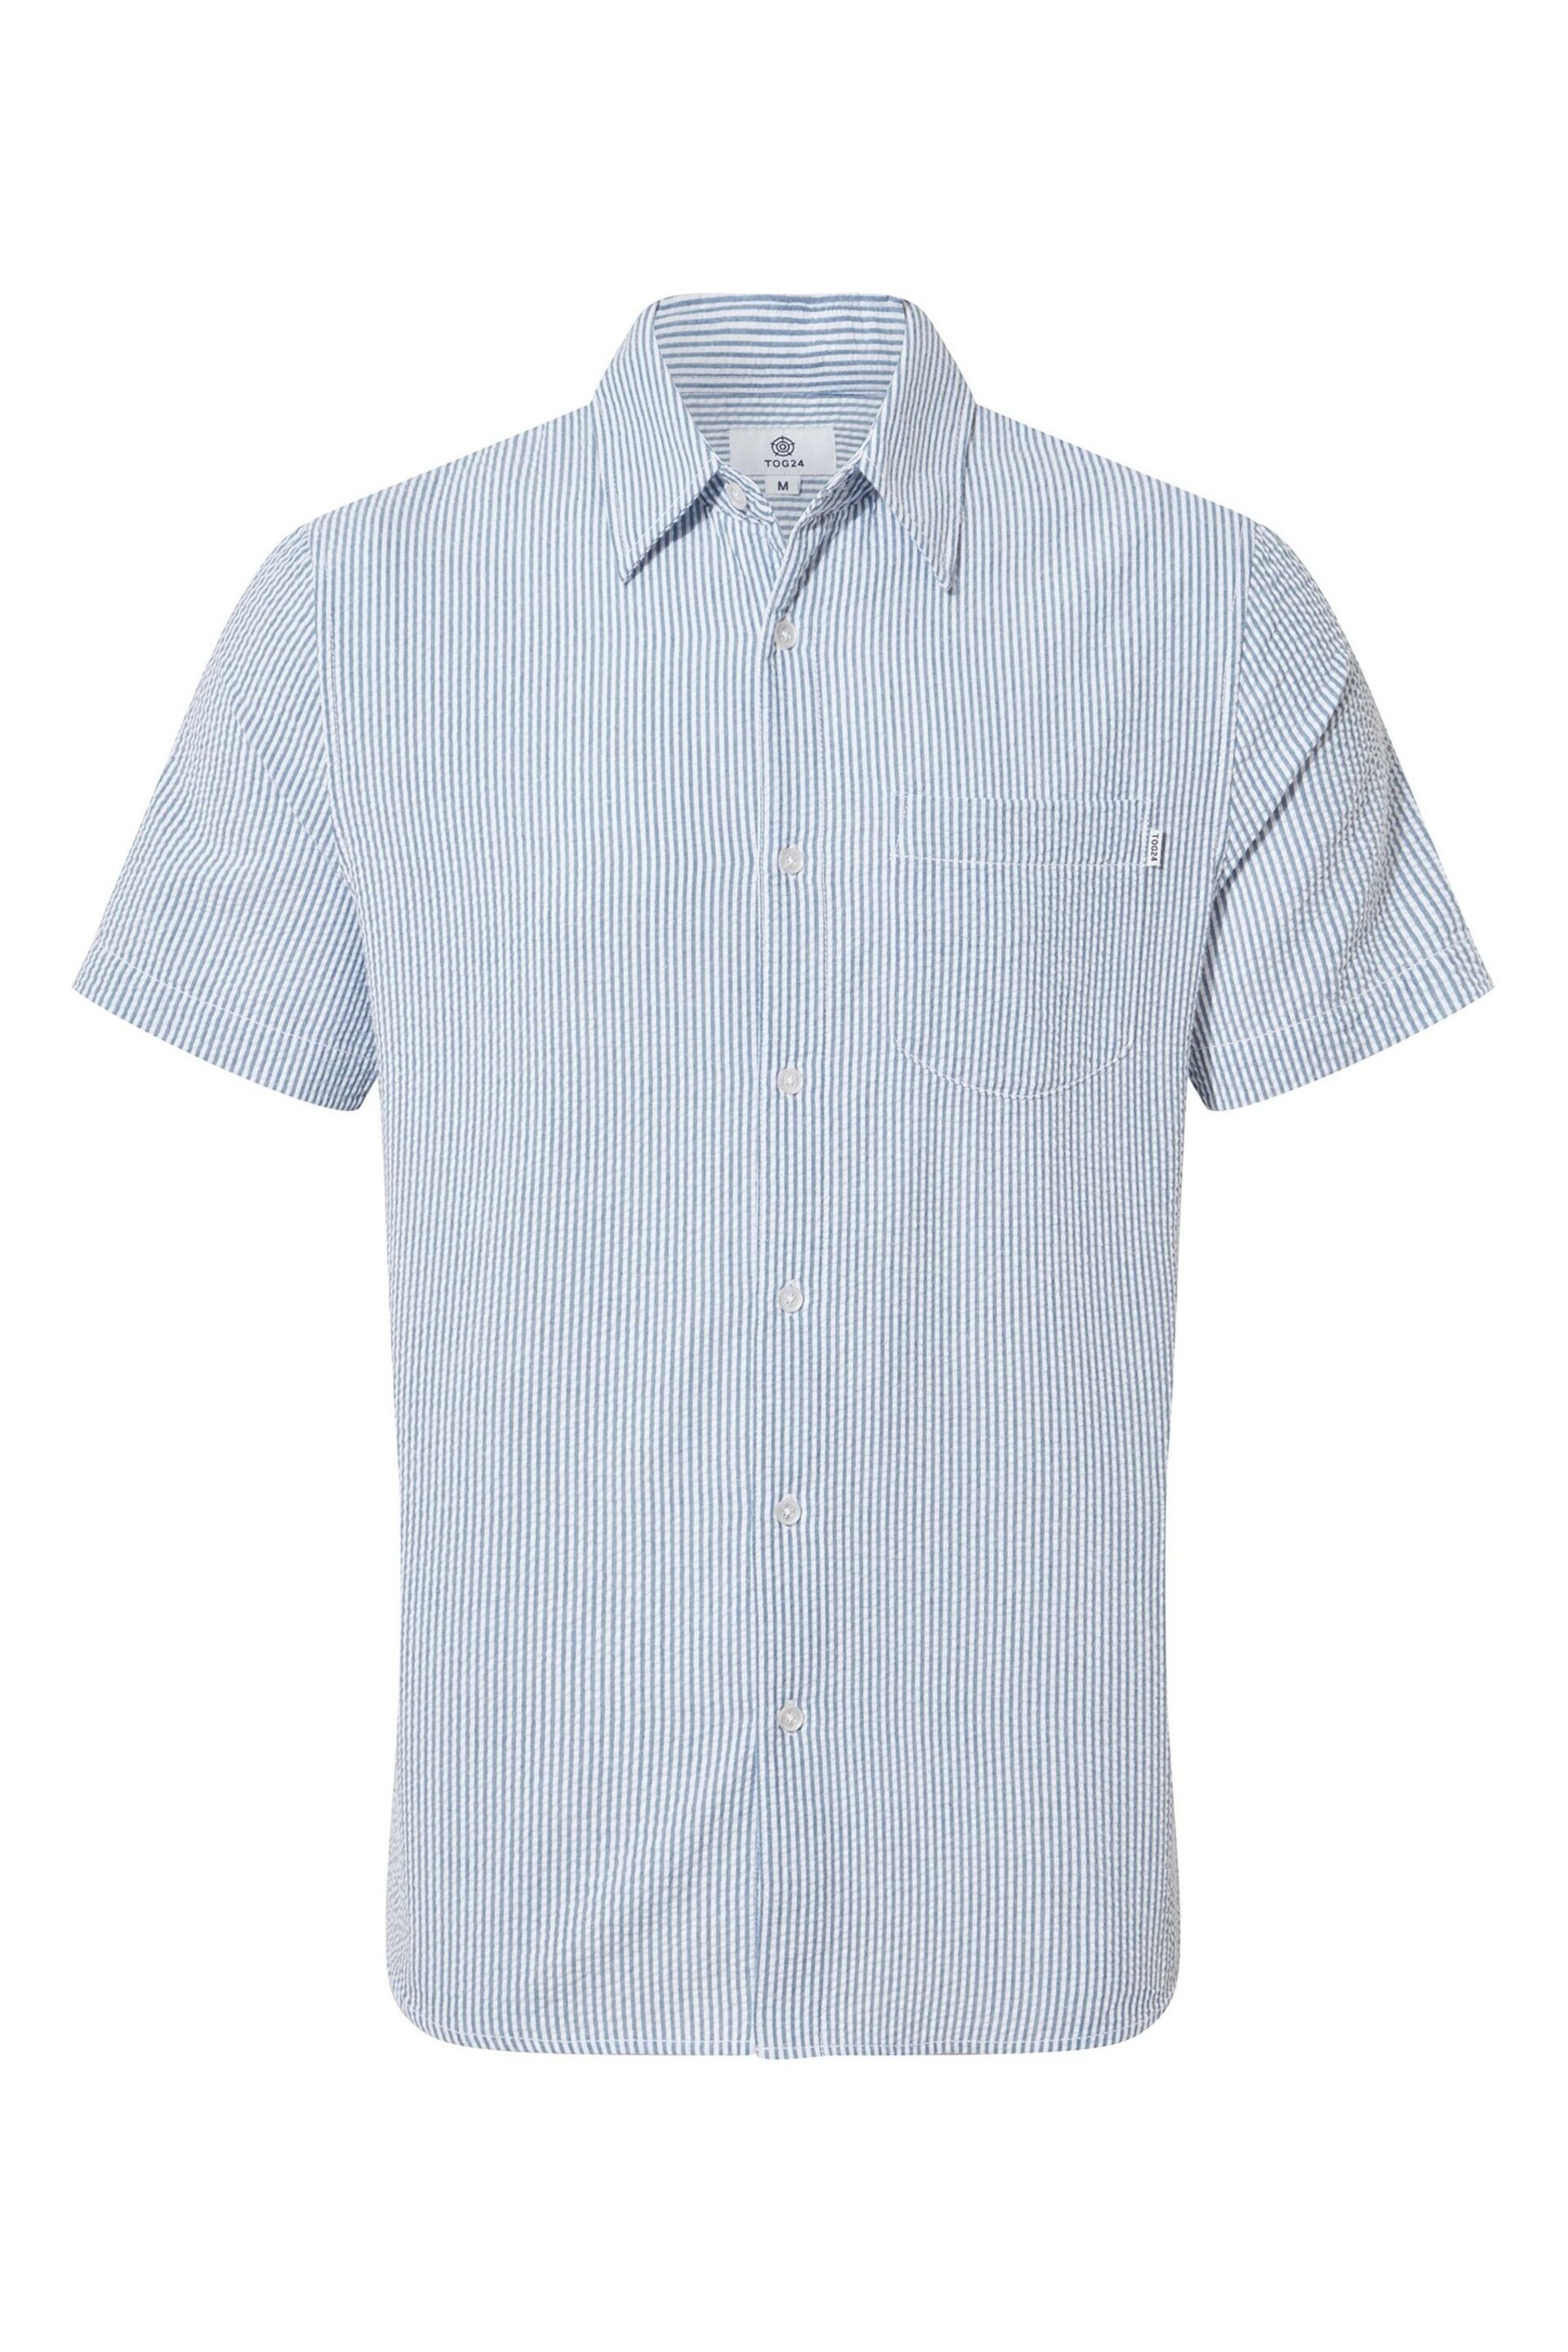 Tog 24 Blue Fenton Short Sleeve Shirt - Image 6 of 6